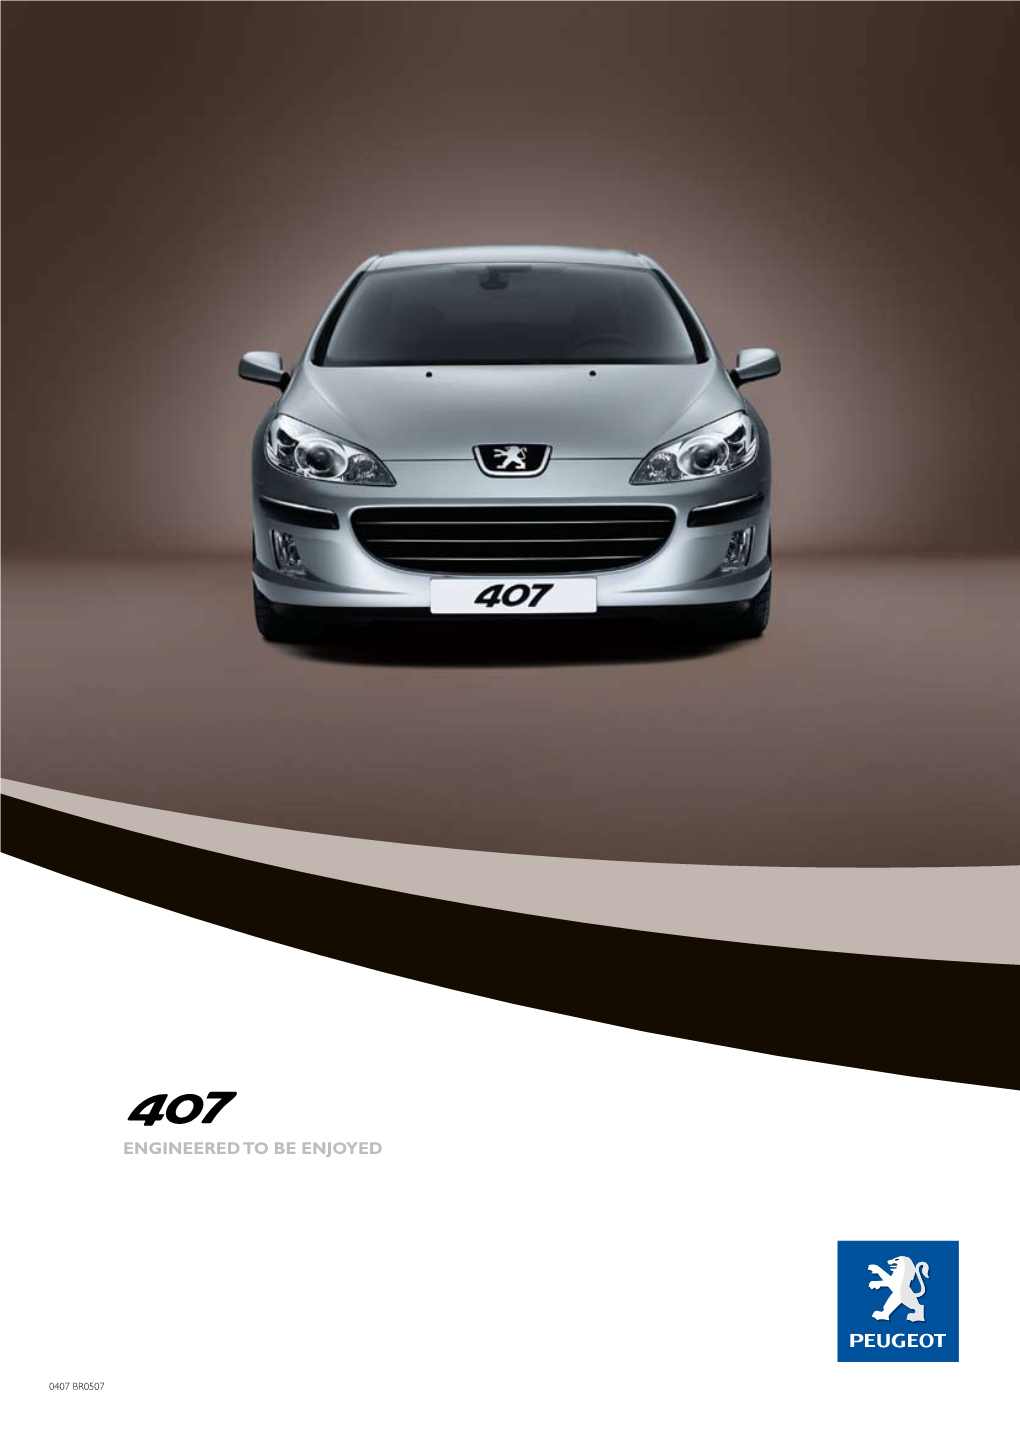 Brochure: Peugeot D2.I 407 (February 2008)